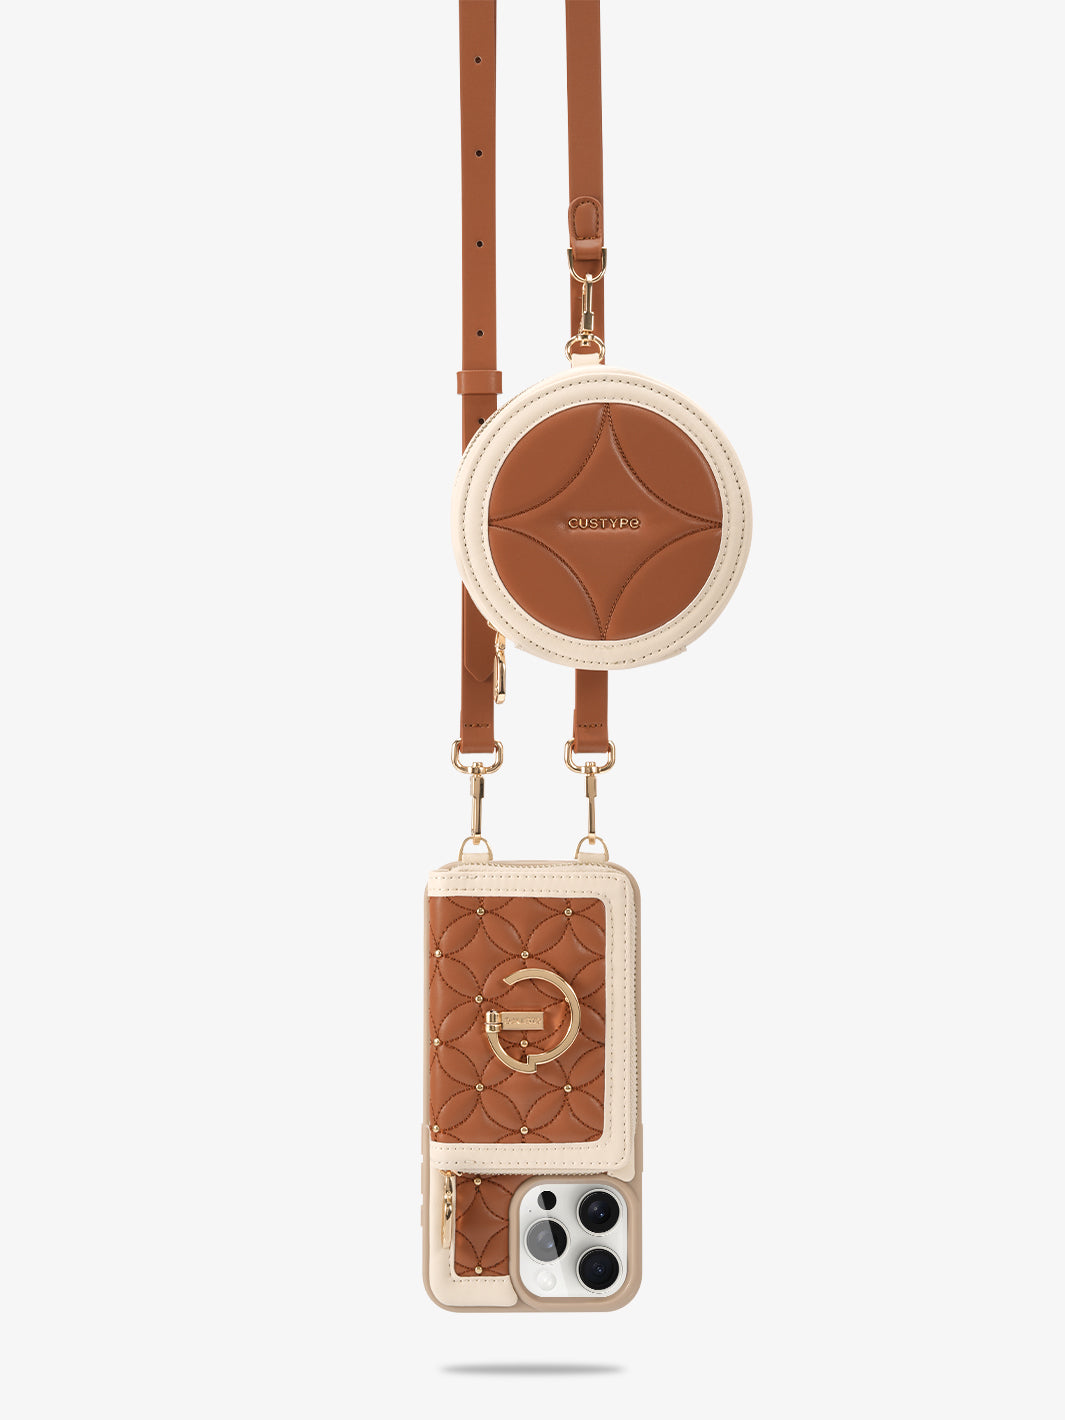 ThreadTrend- Bloom Stitching Phone Case Round Pouch Set in Brown